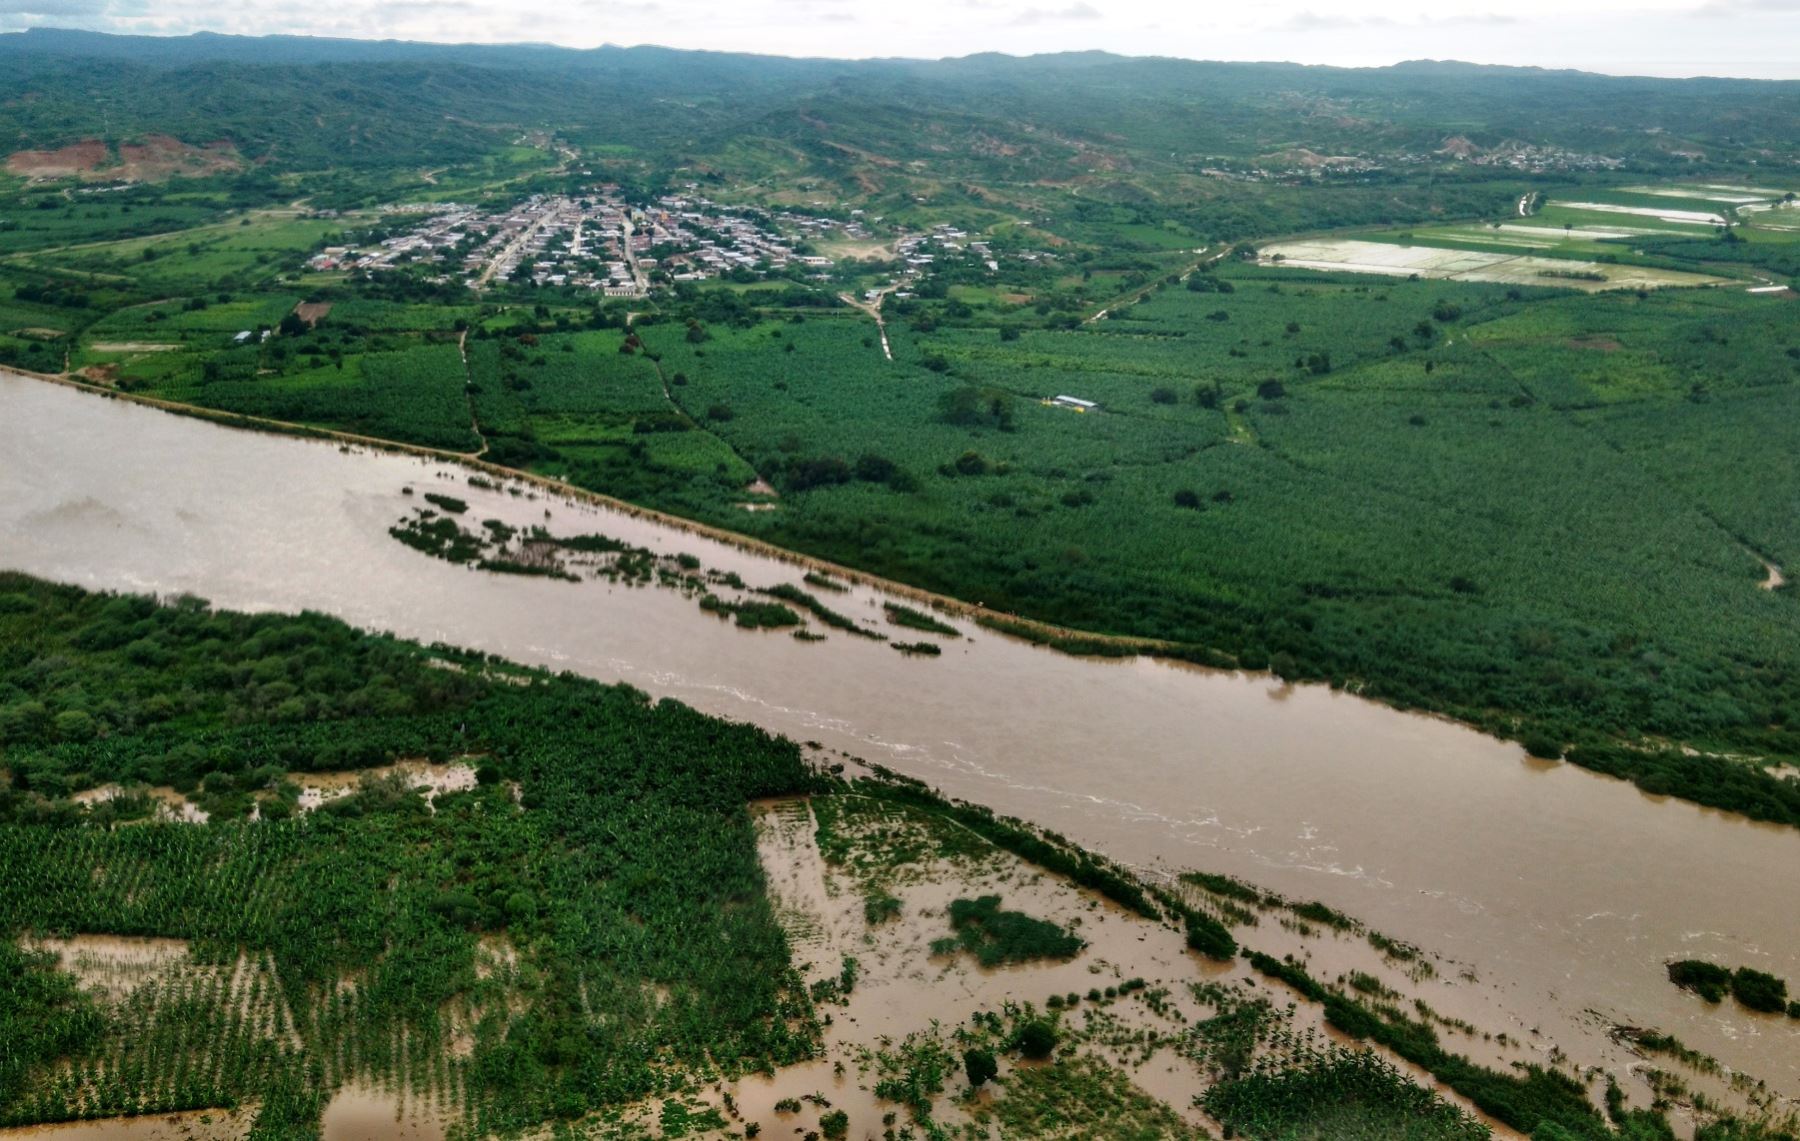 Debido a las persistentes lluvias que se presentaron en la cuenca binacional Puyango-Tumbes se ha registrado un incremento del caudal del río Tumbes hasta alcanzar 525.7 metros cúbicos por segundo, lo cual podría ocasionar inundaciones en zonas agrícolas de la región, advirtió hoy el Senamhi. ANDINA/Difusión